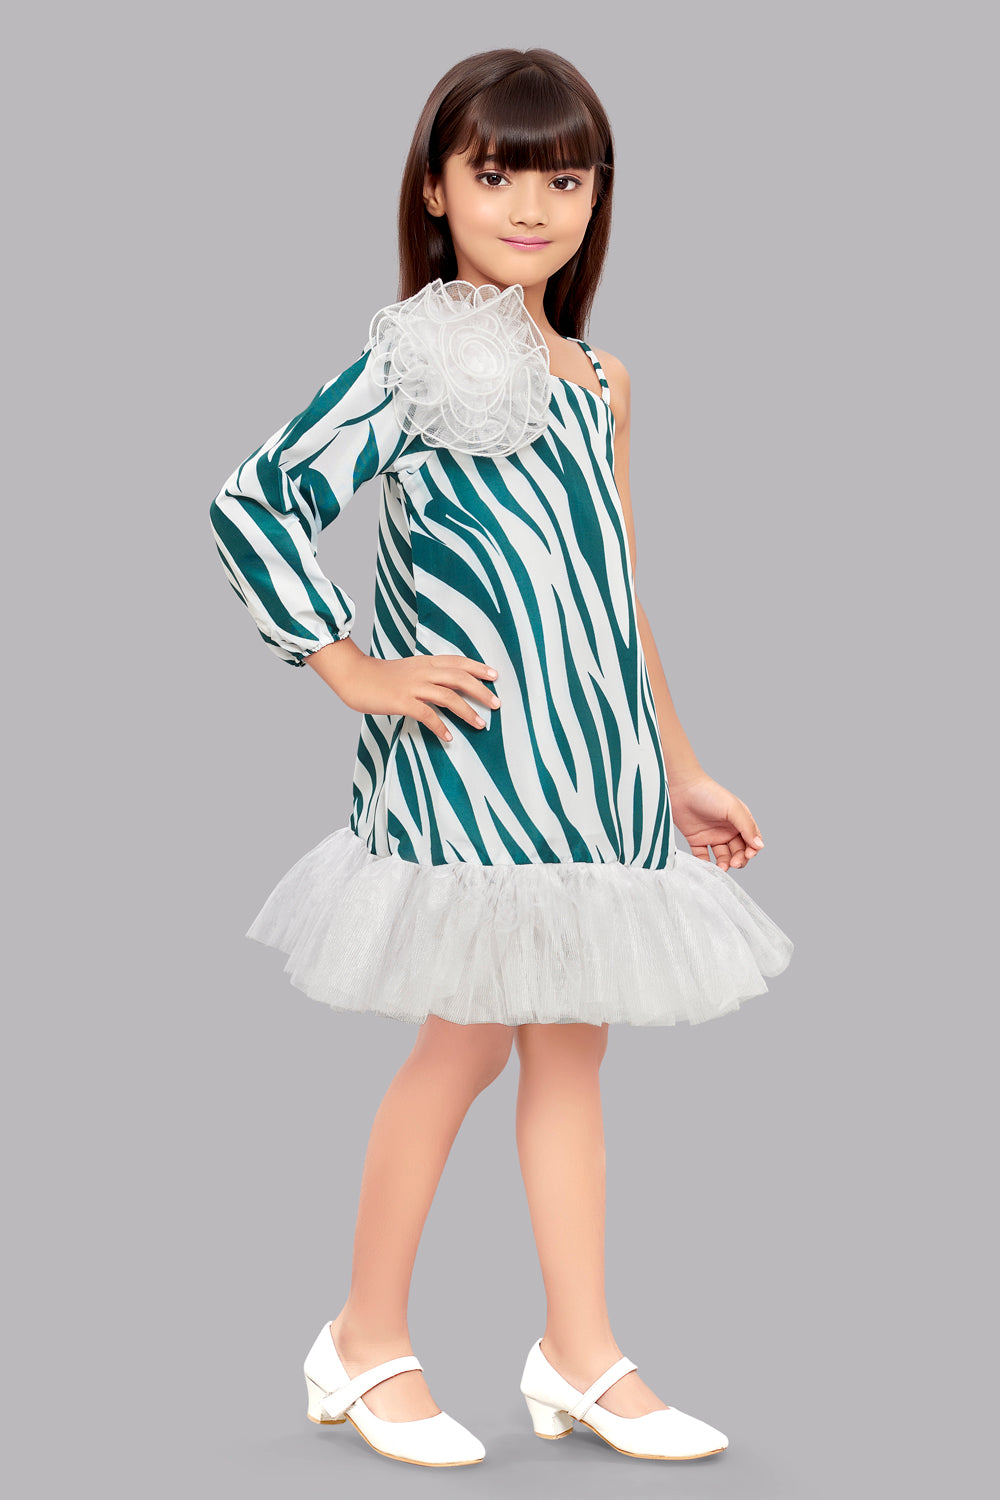 Zebra Aline Dress -Green & White